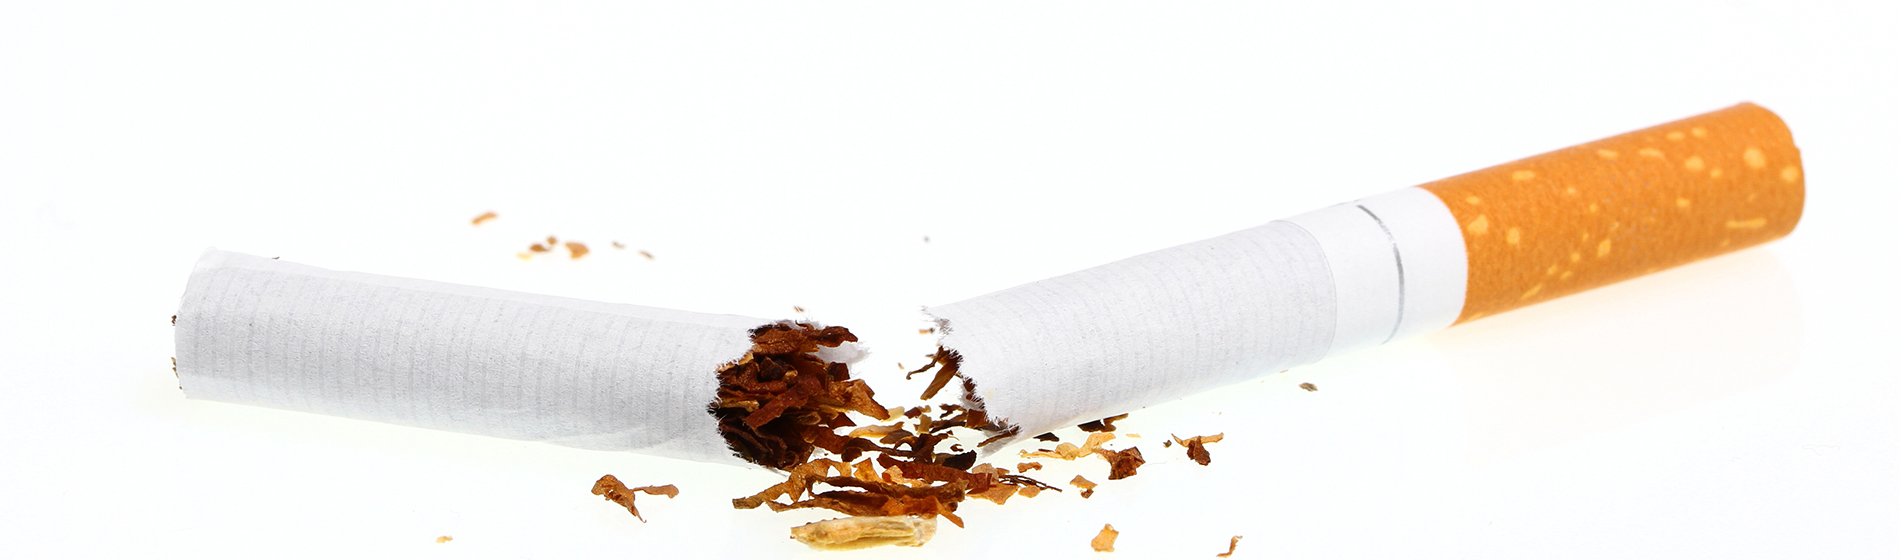 Methode arret tabac